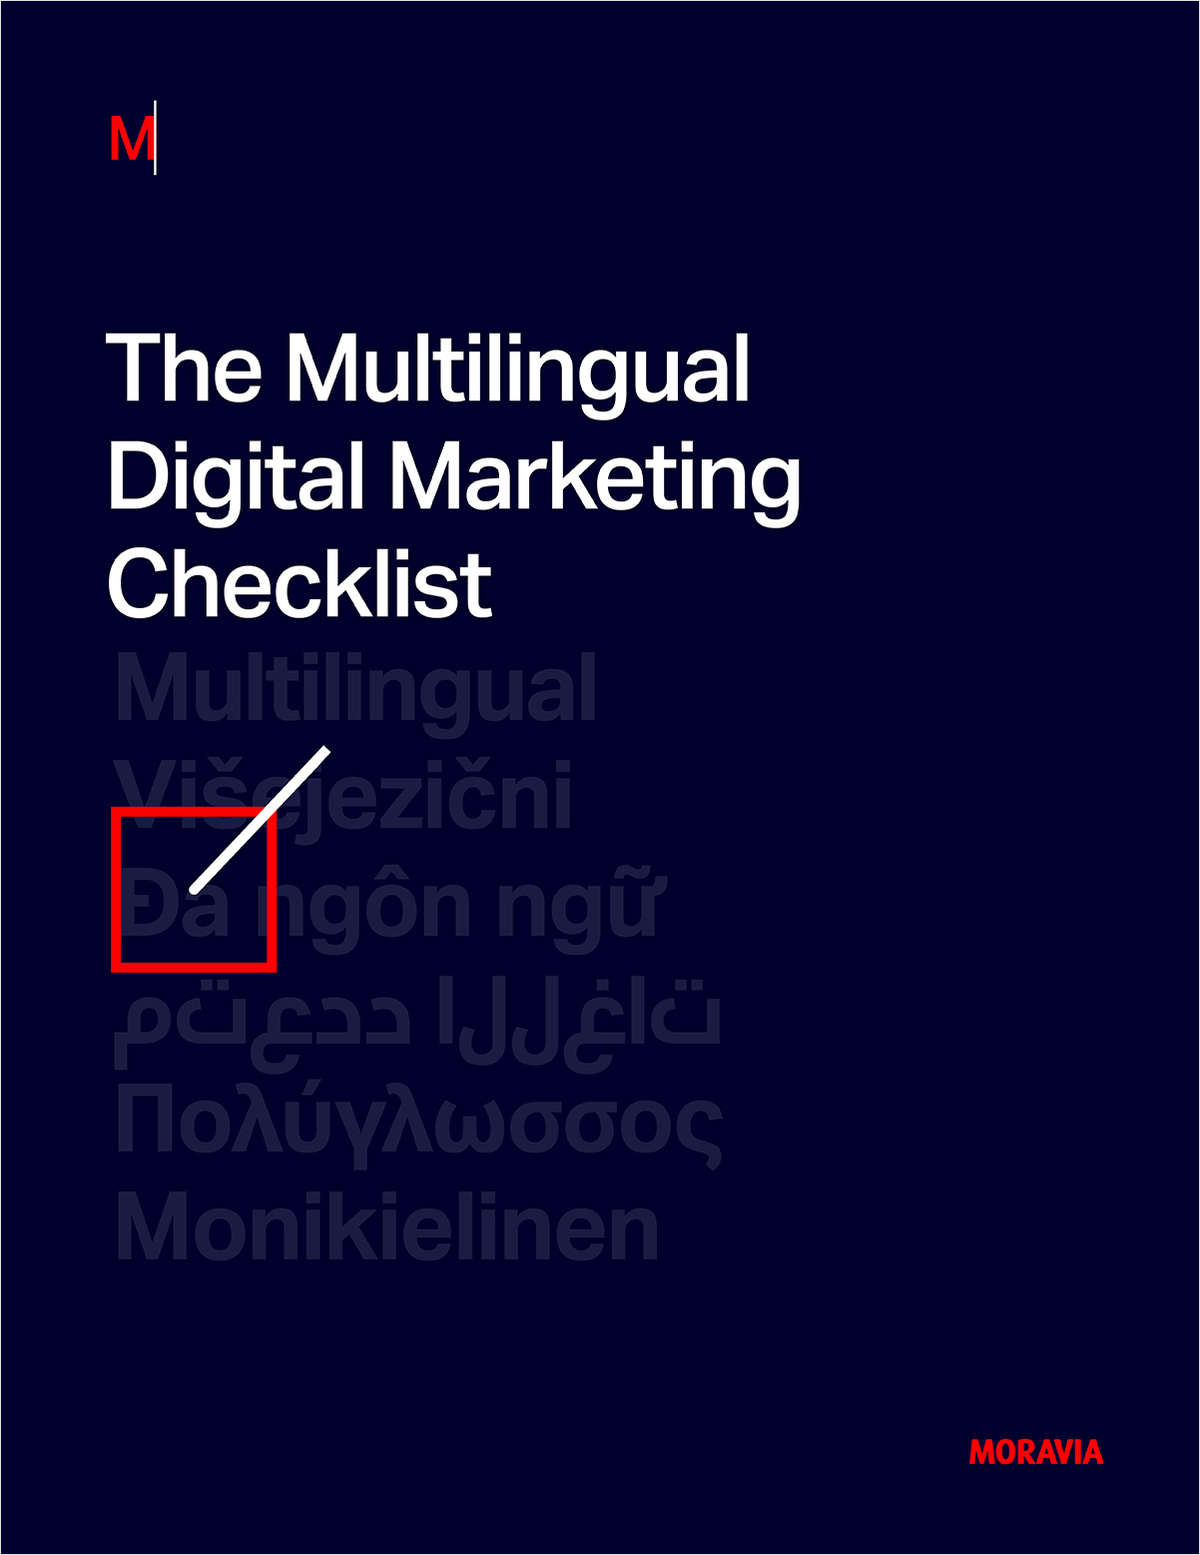 The Multilingual Digital Marketing Checklist